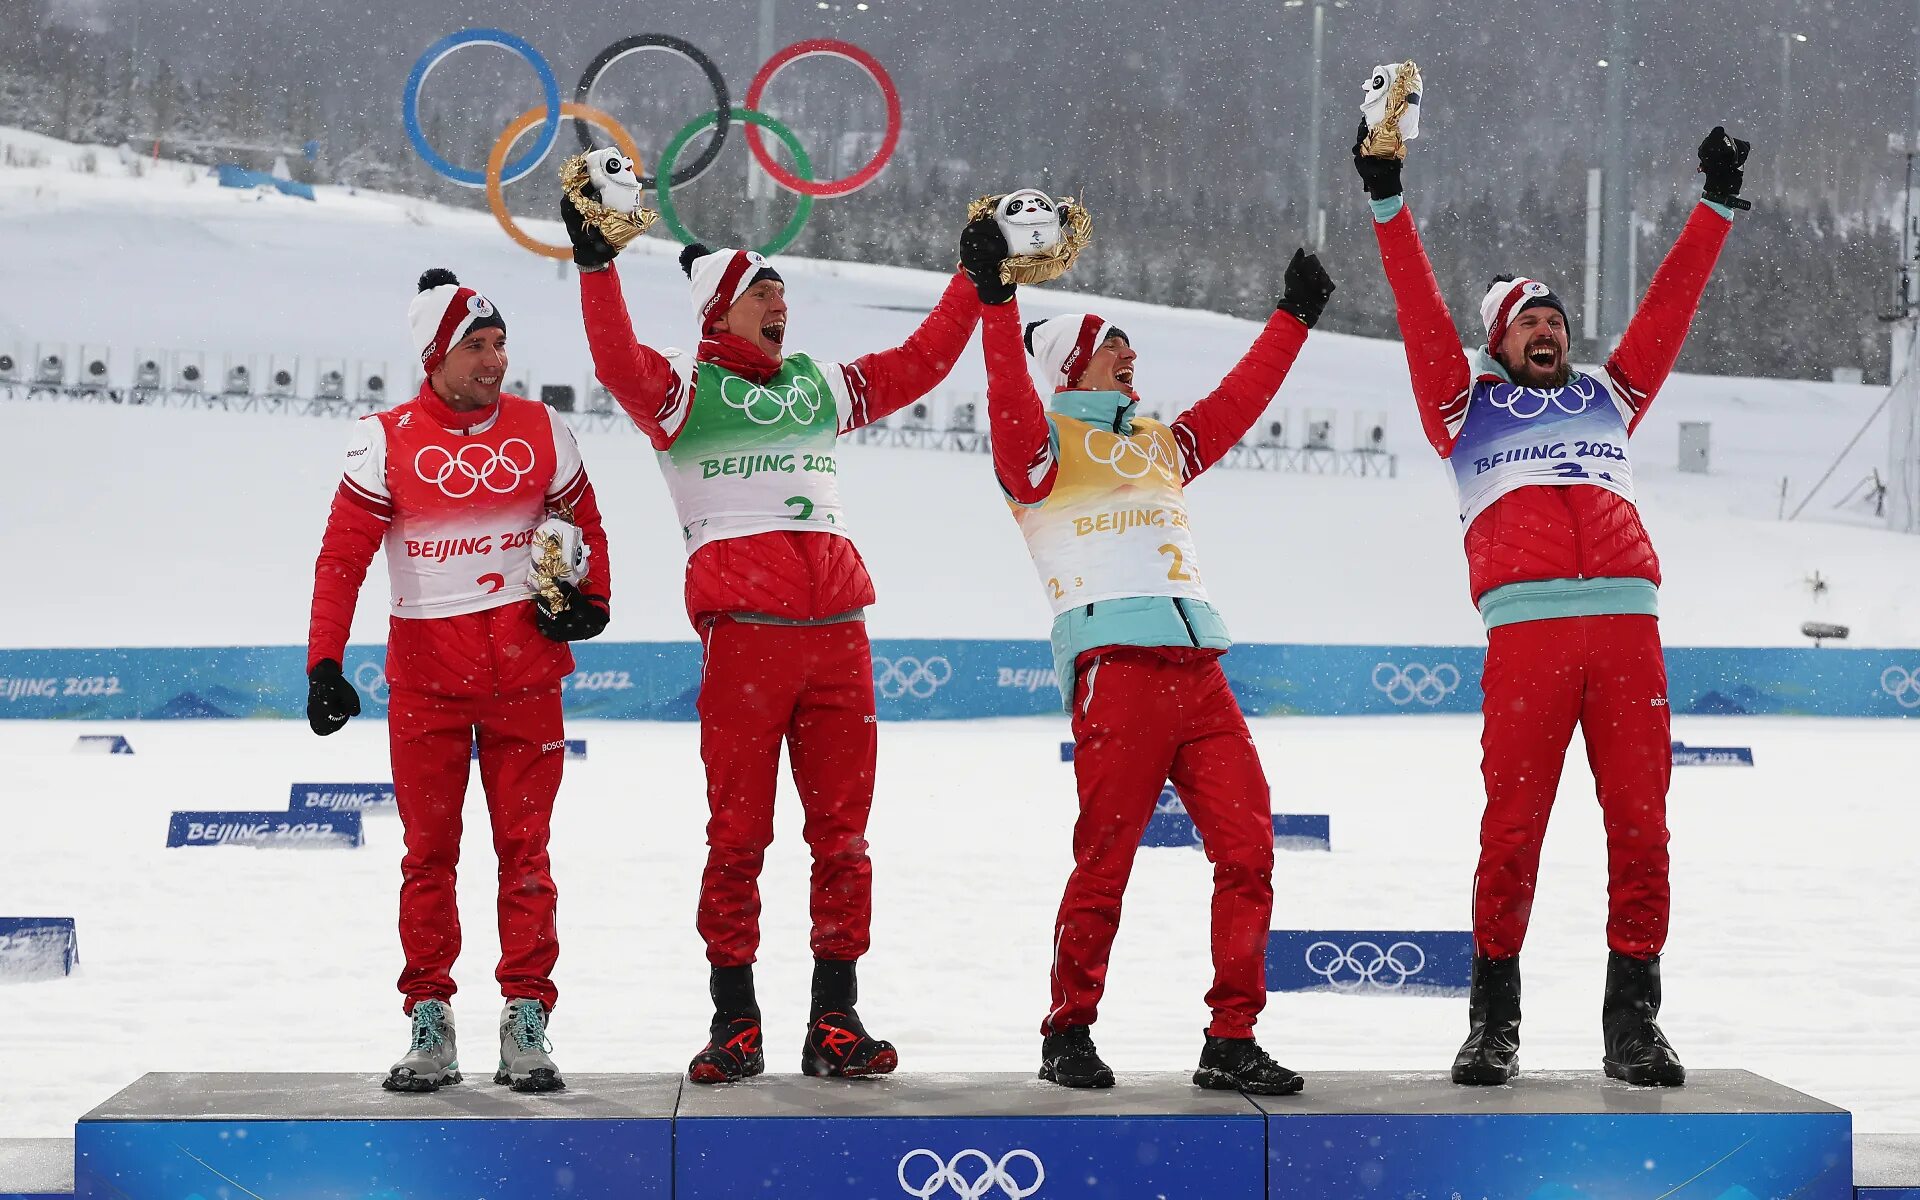 Впереди нас ехали спортсмены лыжники вовремя. Олимпийские игры 2022. Медали России на Олимпиаде в Пекине 2022.